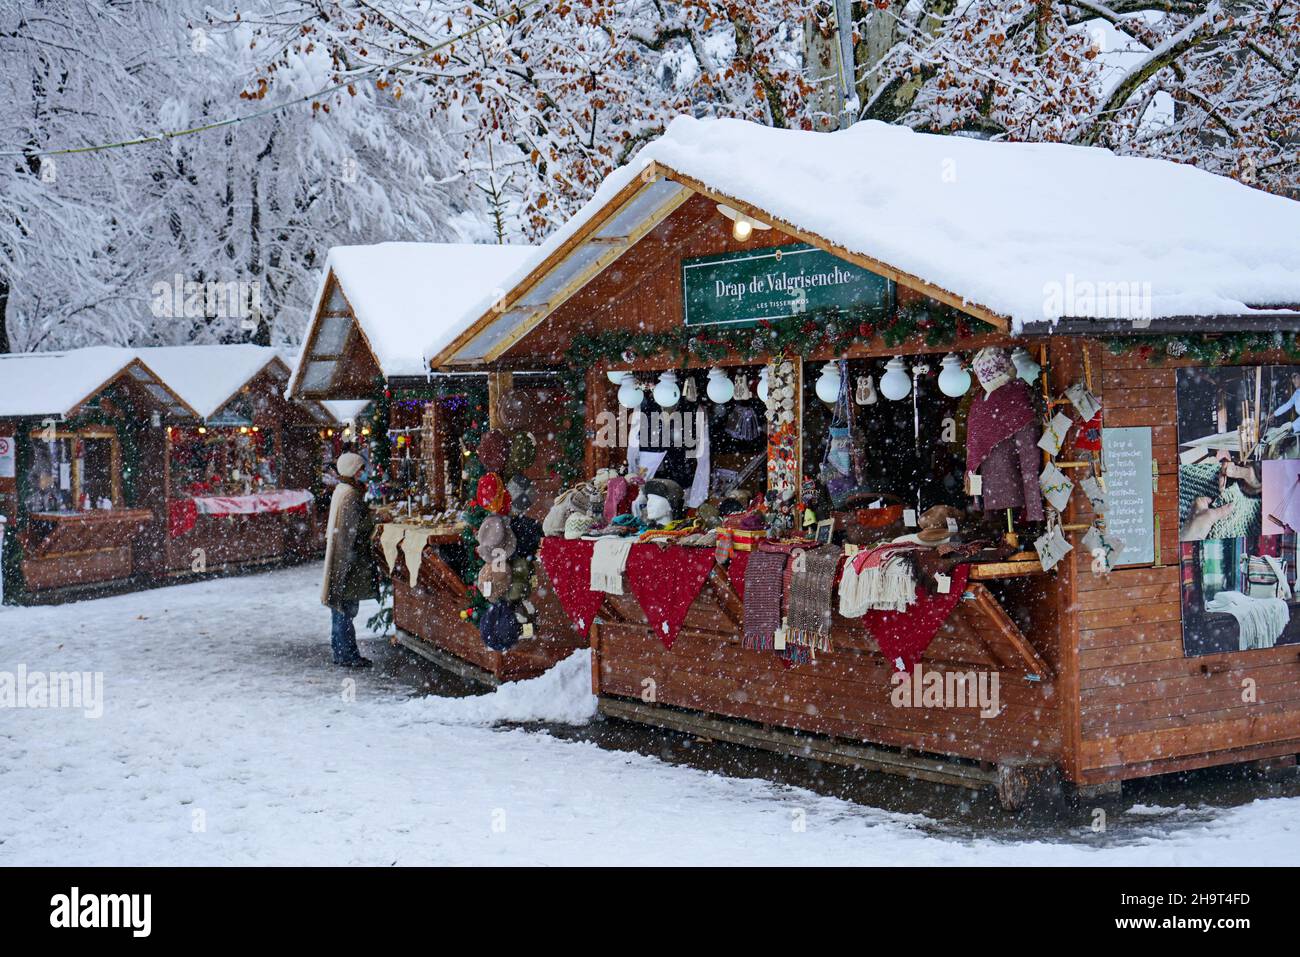 Tradizionale mercatino di Natale sotto nevicate pesanti. Aosta, Italia - Dicembre 2021 Foto Stock